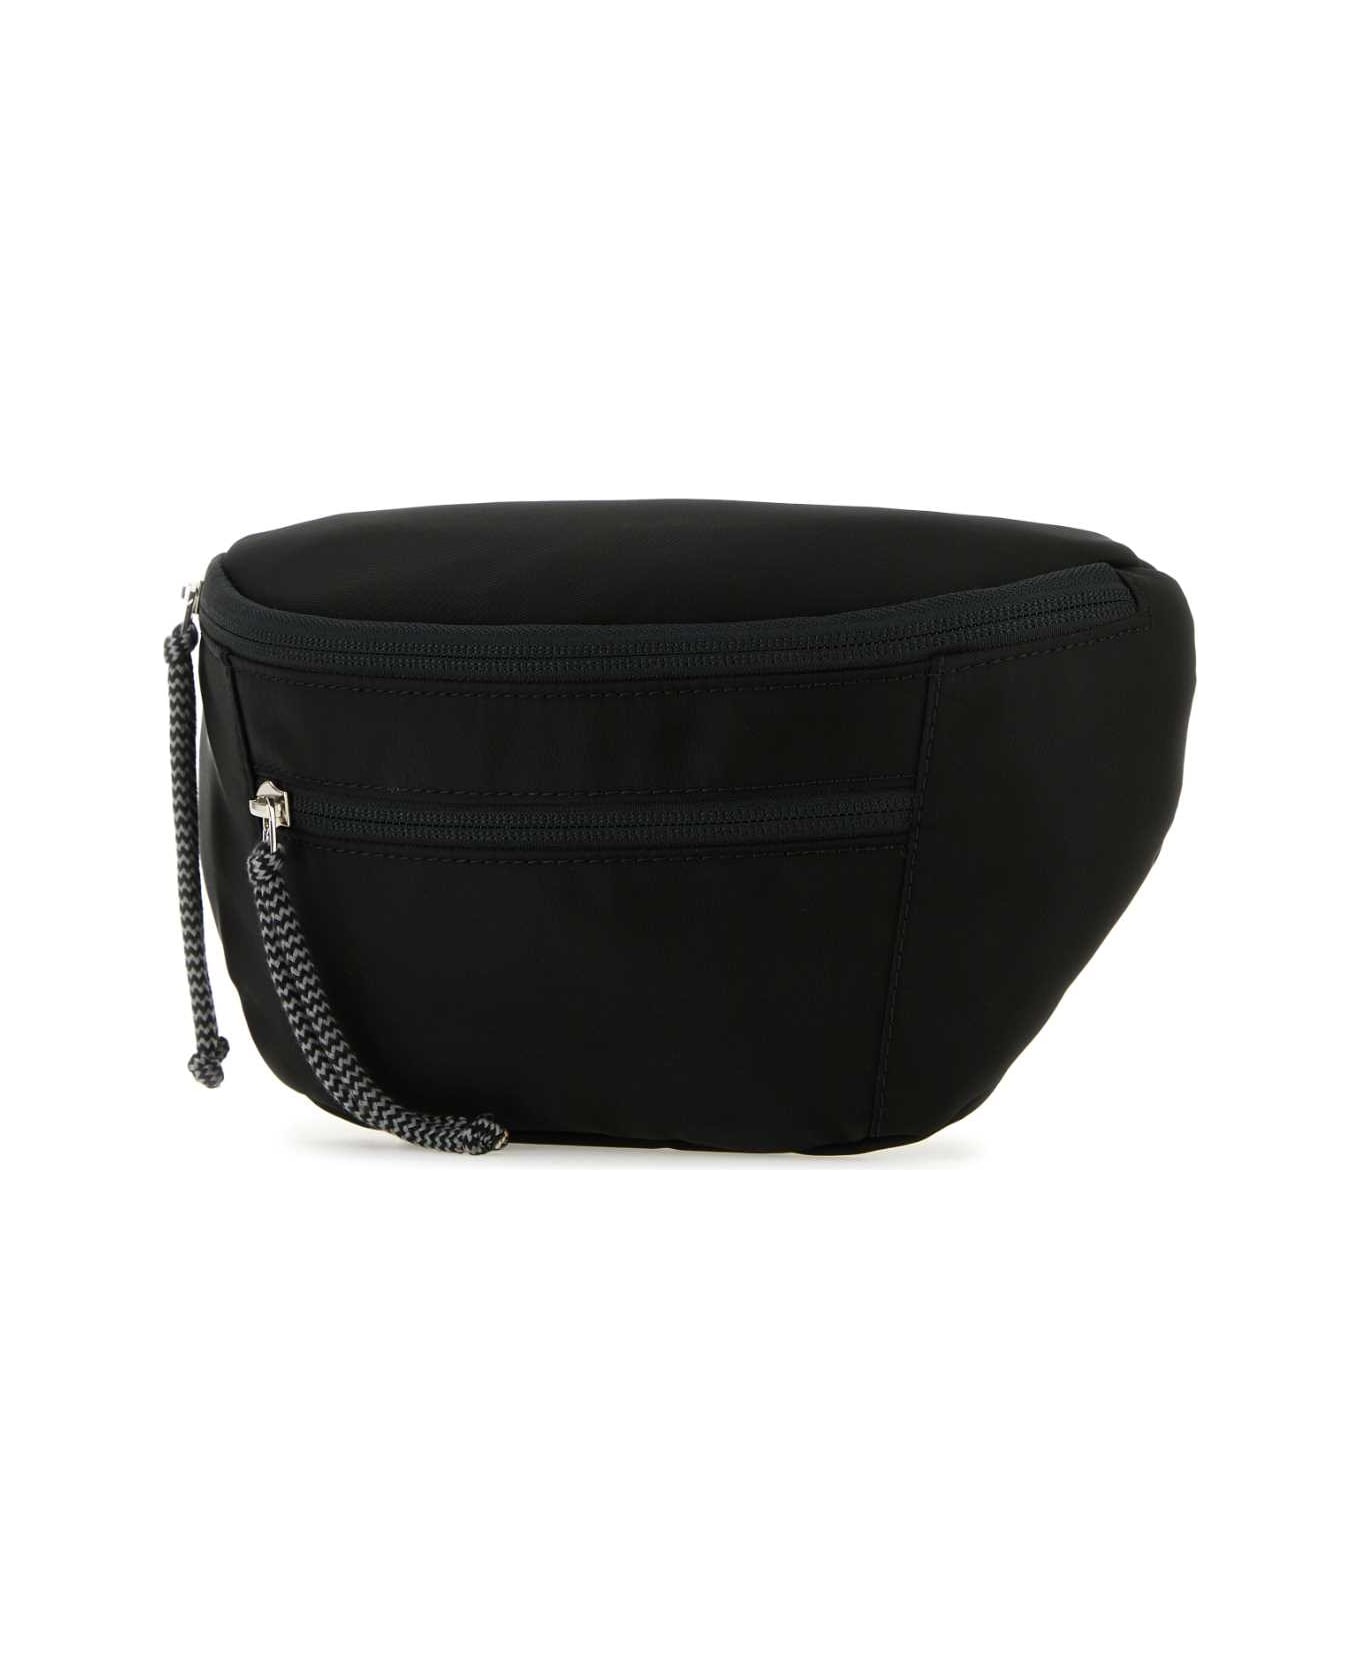 Lanvin Black Nylon Curb Belt Bag - Black